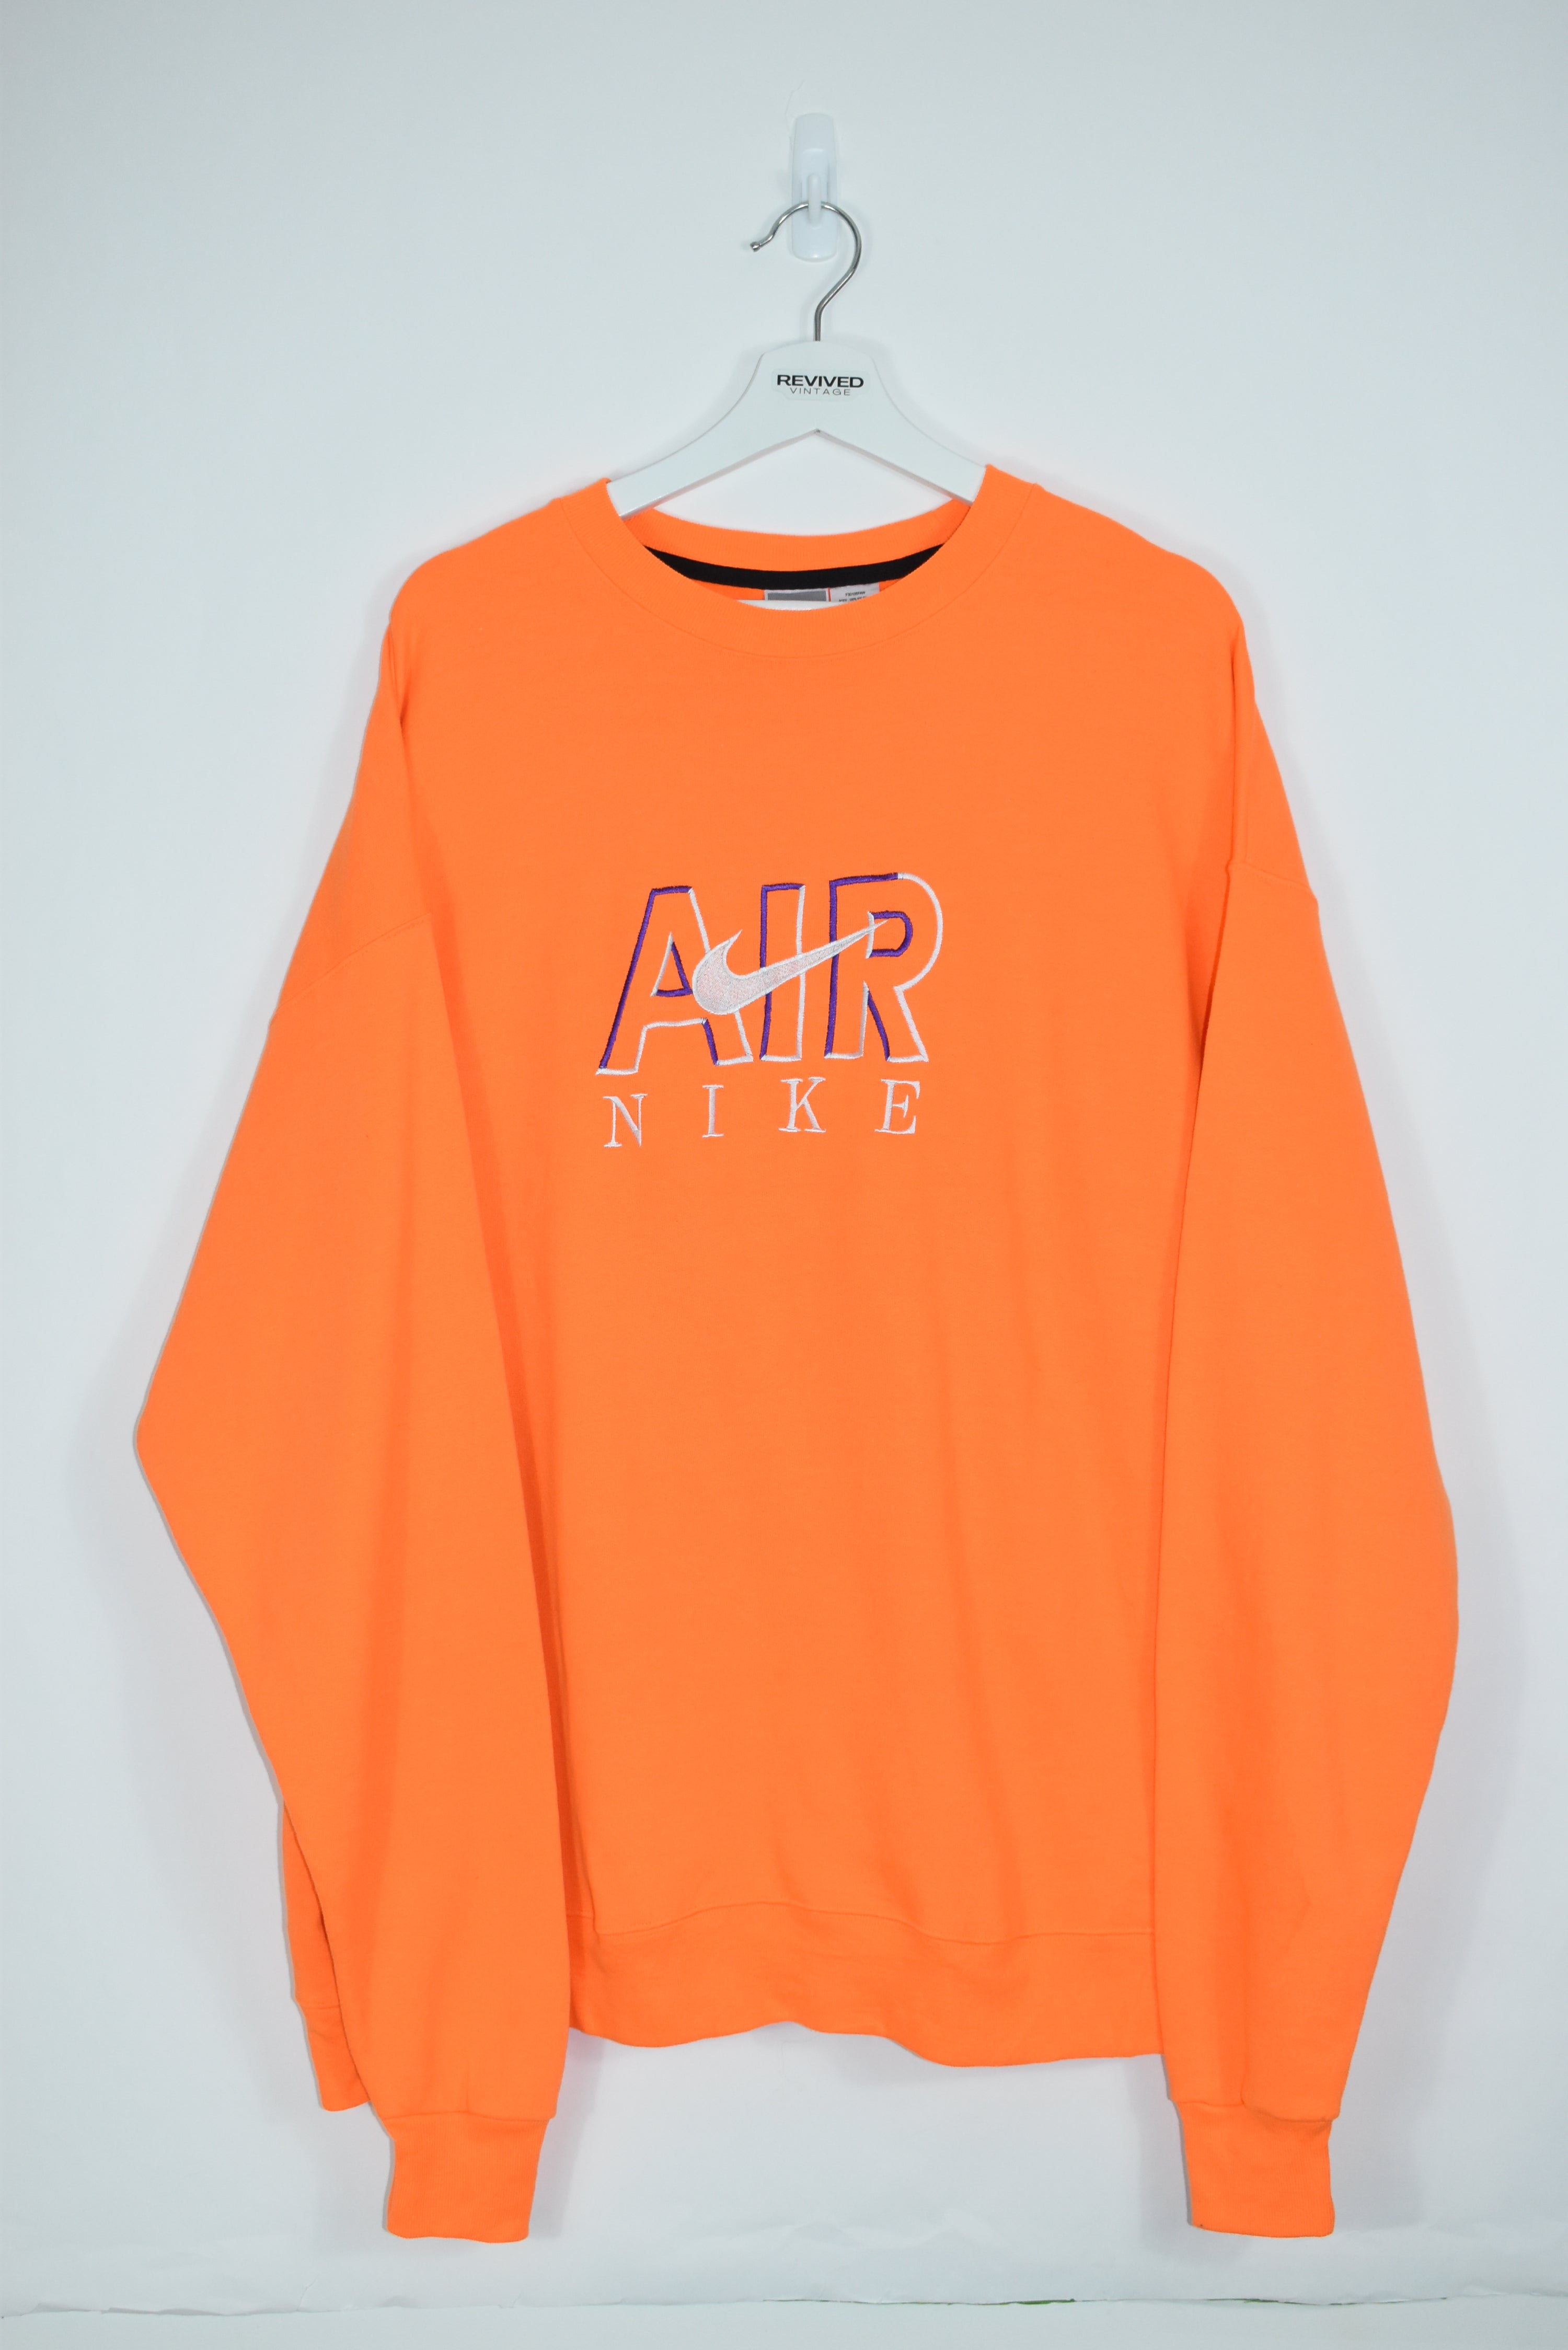 Vintage Nike Air Embroidery Bootleg Sweatshirt Orange Xlarge